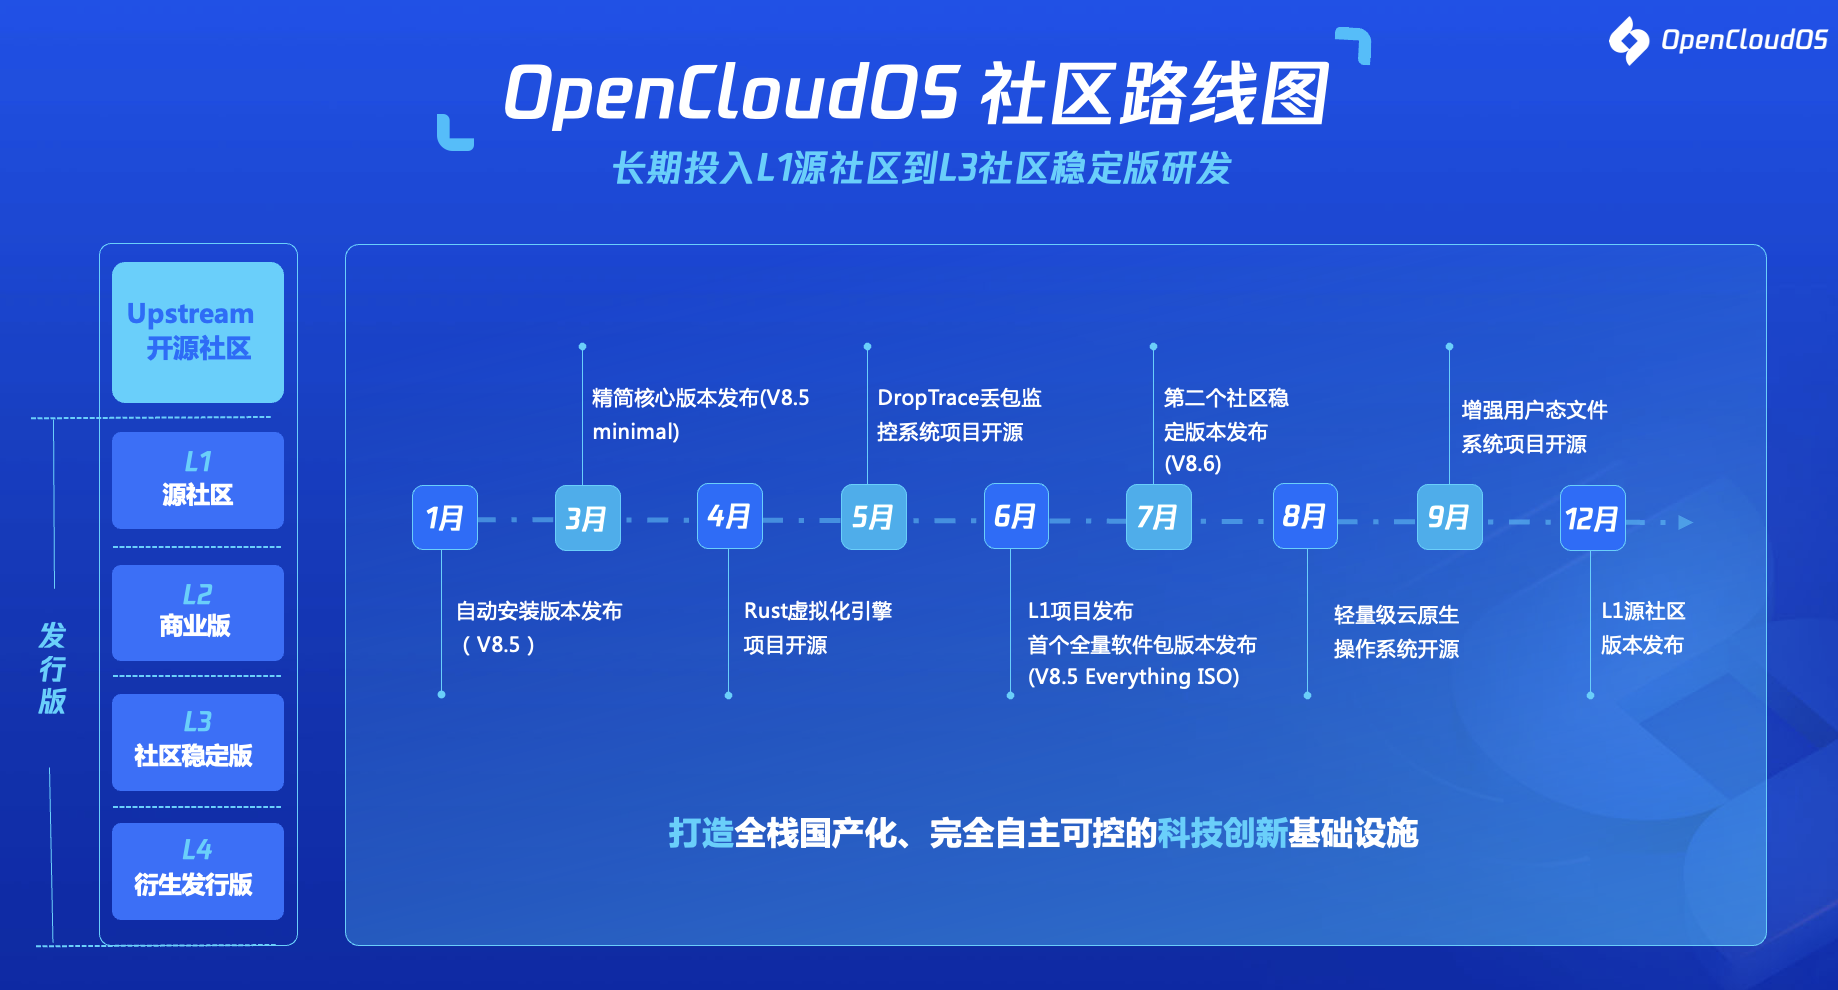 全链路国产化！国产开源操作系统OpenCloudOS首度披露技术路线